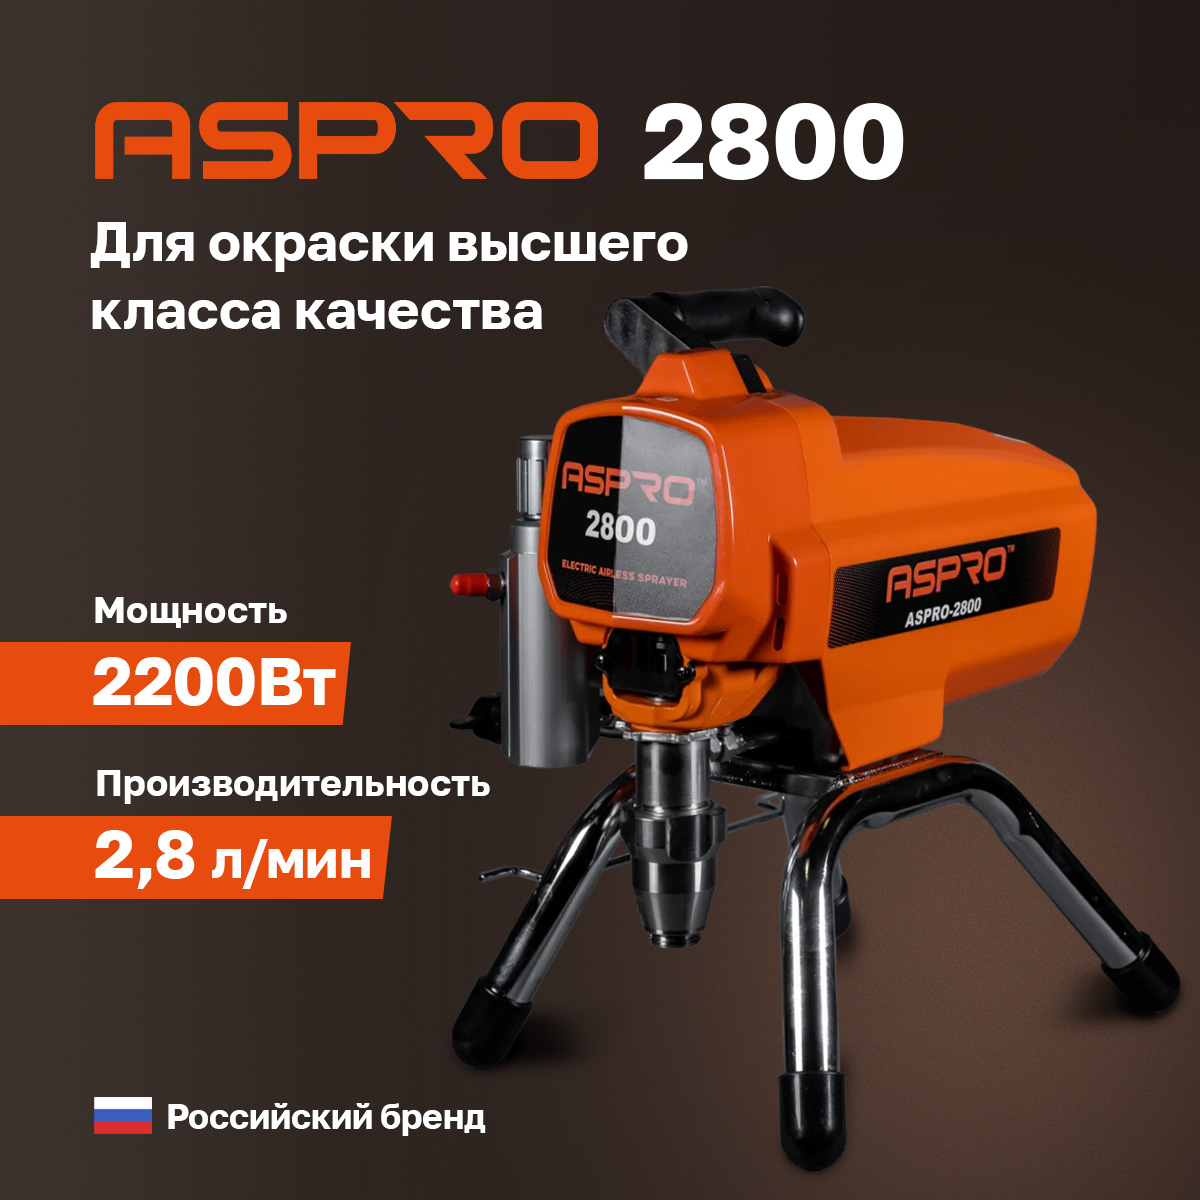 Окрасочный аппарат ASPRO-2800 102384 окрасочный аппарат aspro 3900® 100375